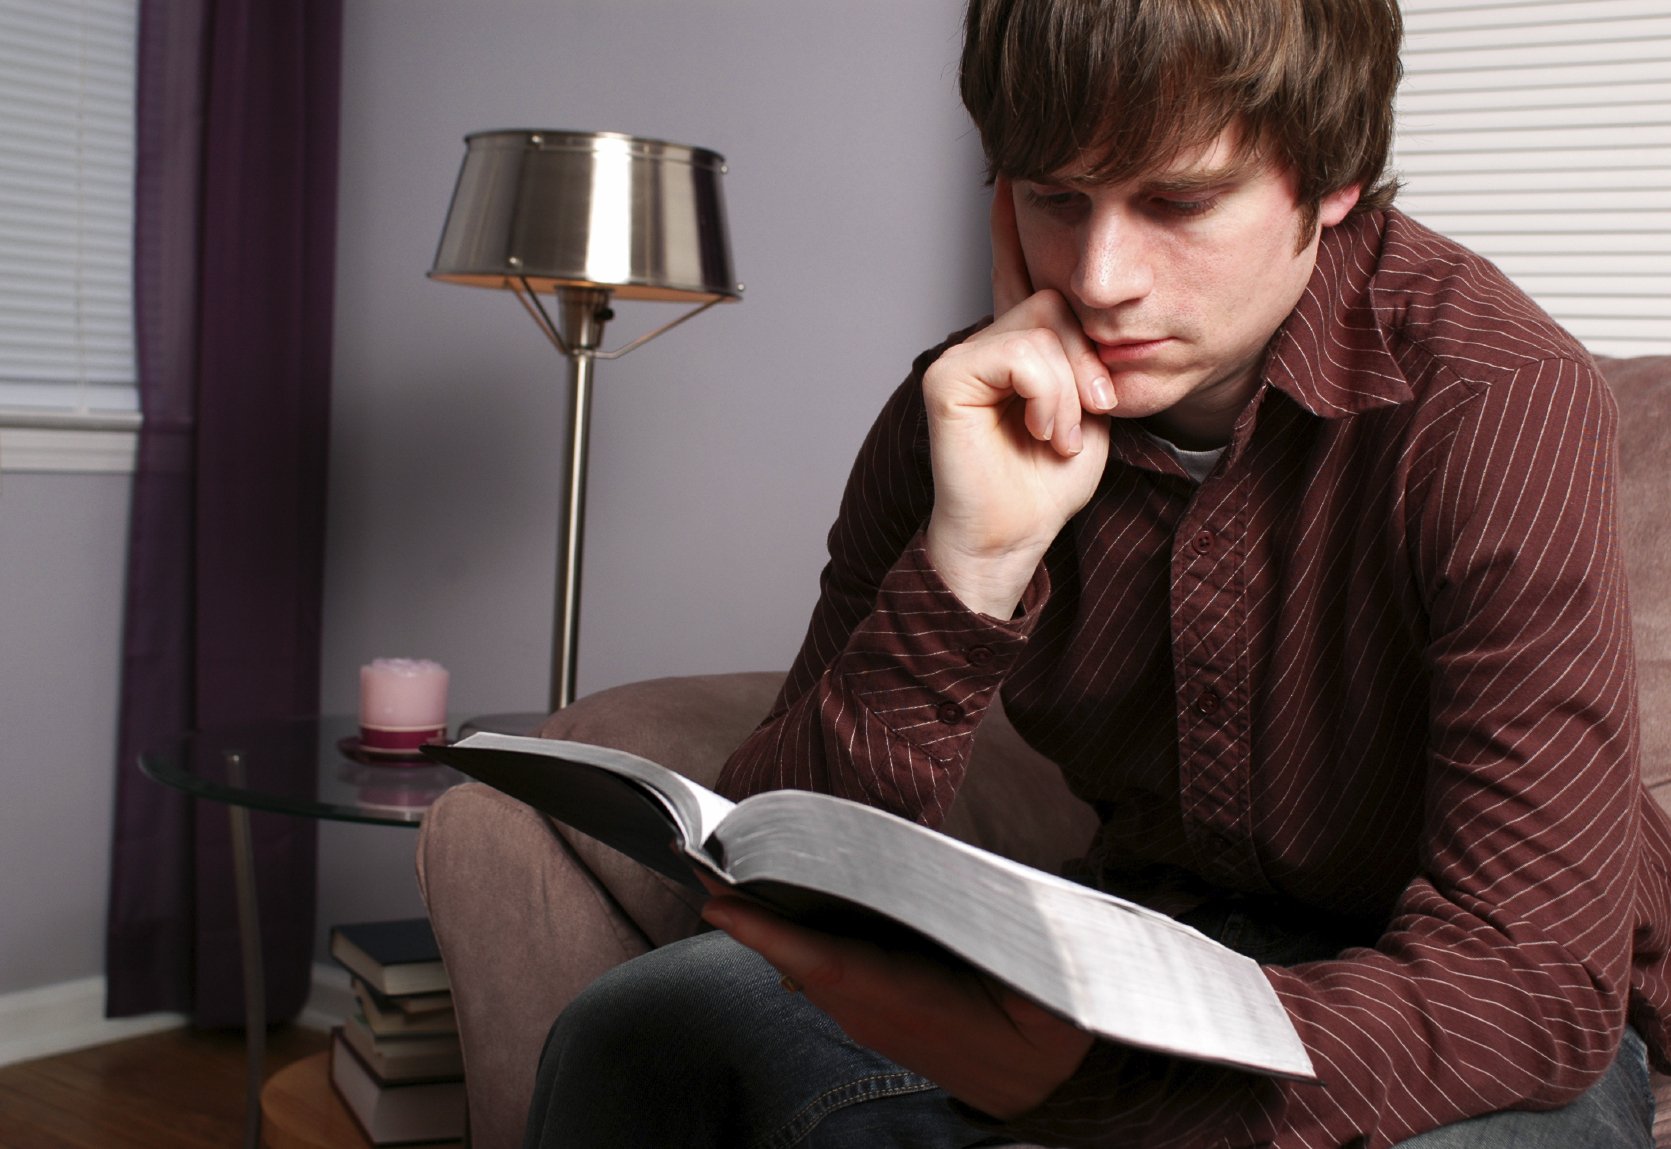 Читать приличный. Человек читает Библию. Задумчивый парень. Юноша и Библия. Мужчина с Библией.